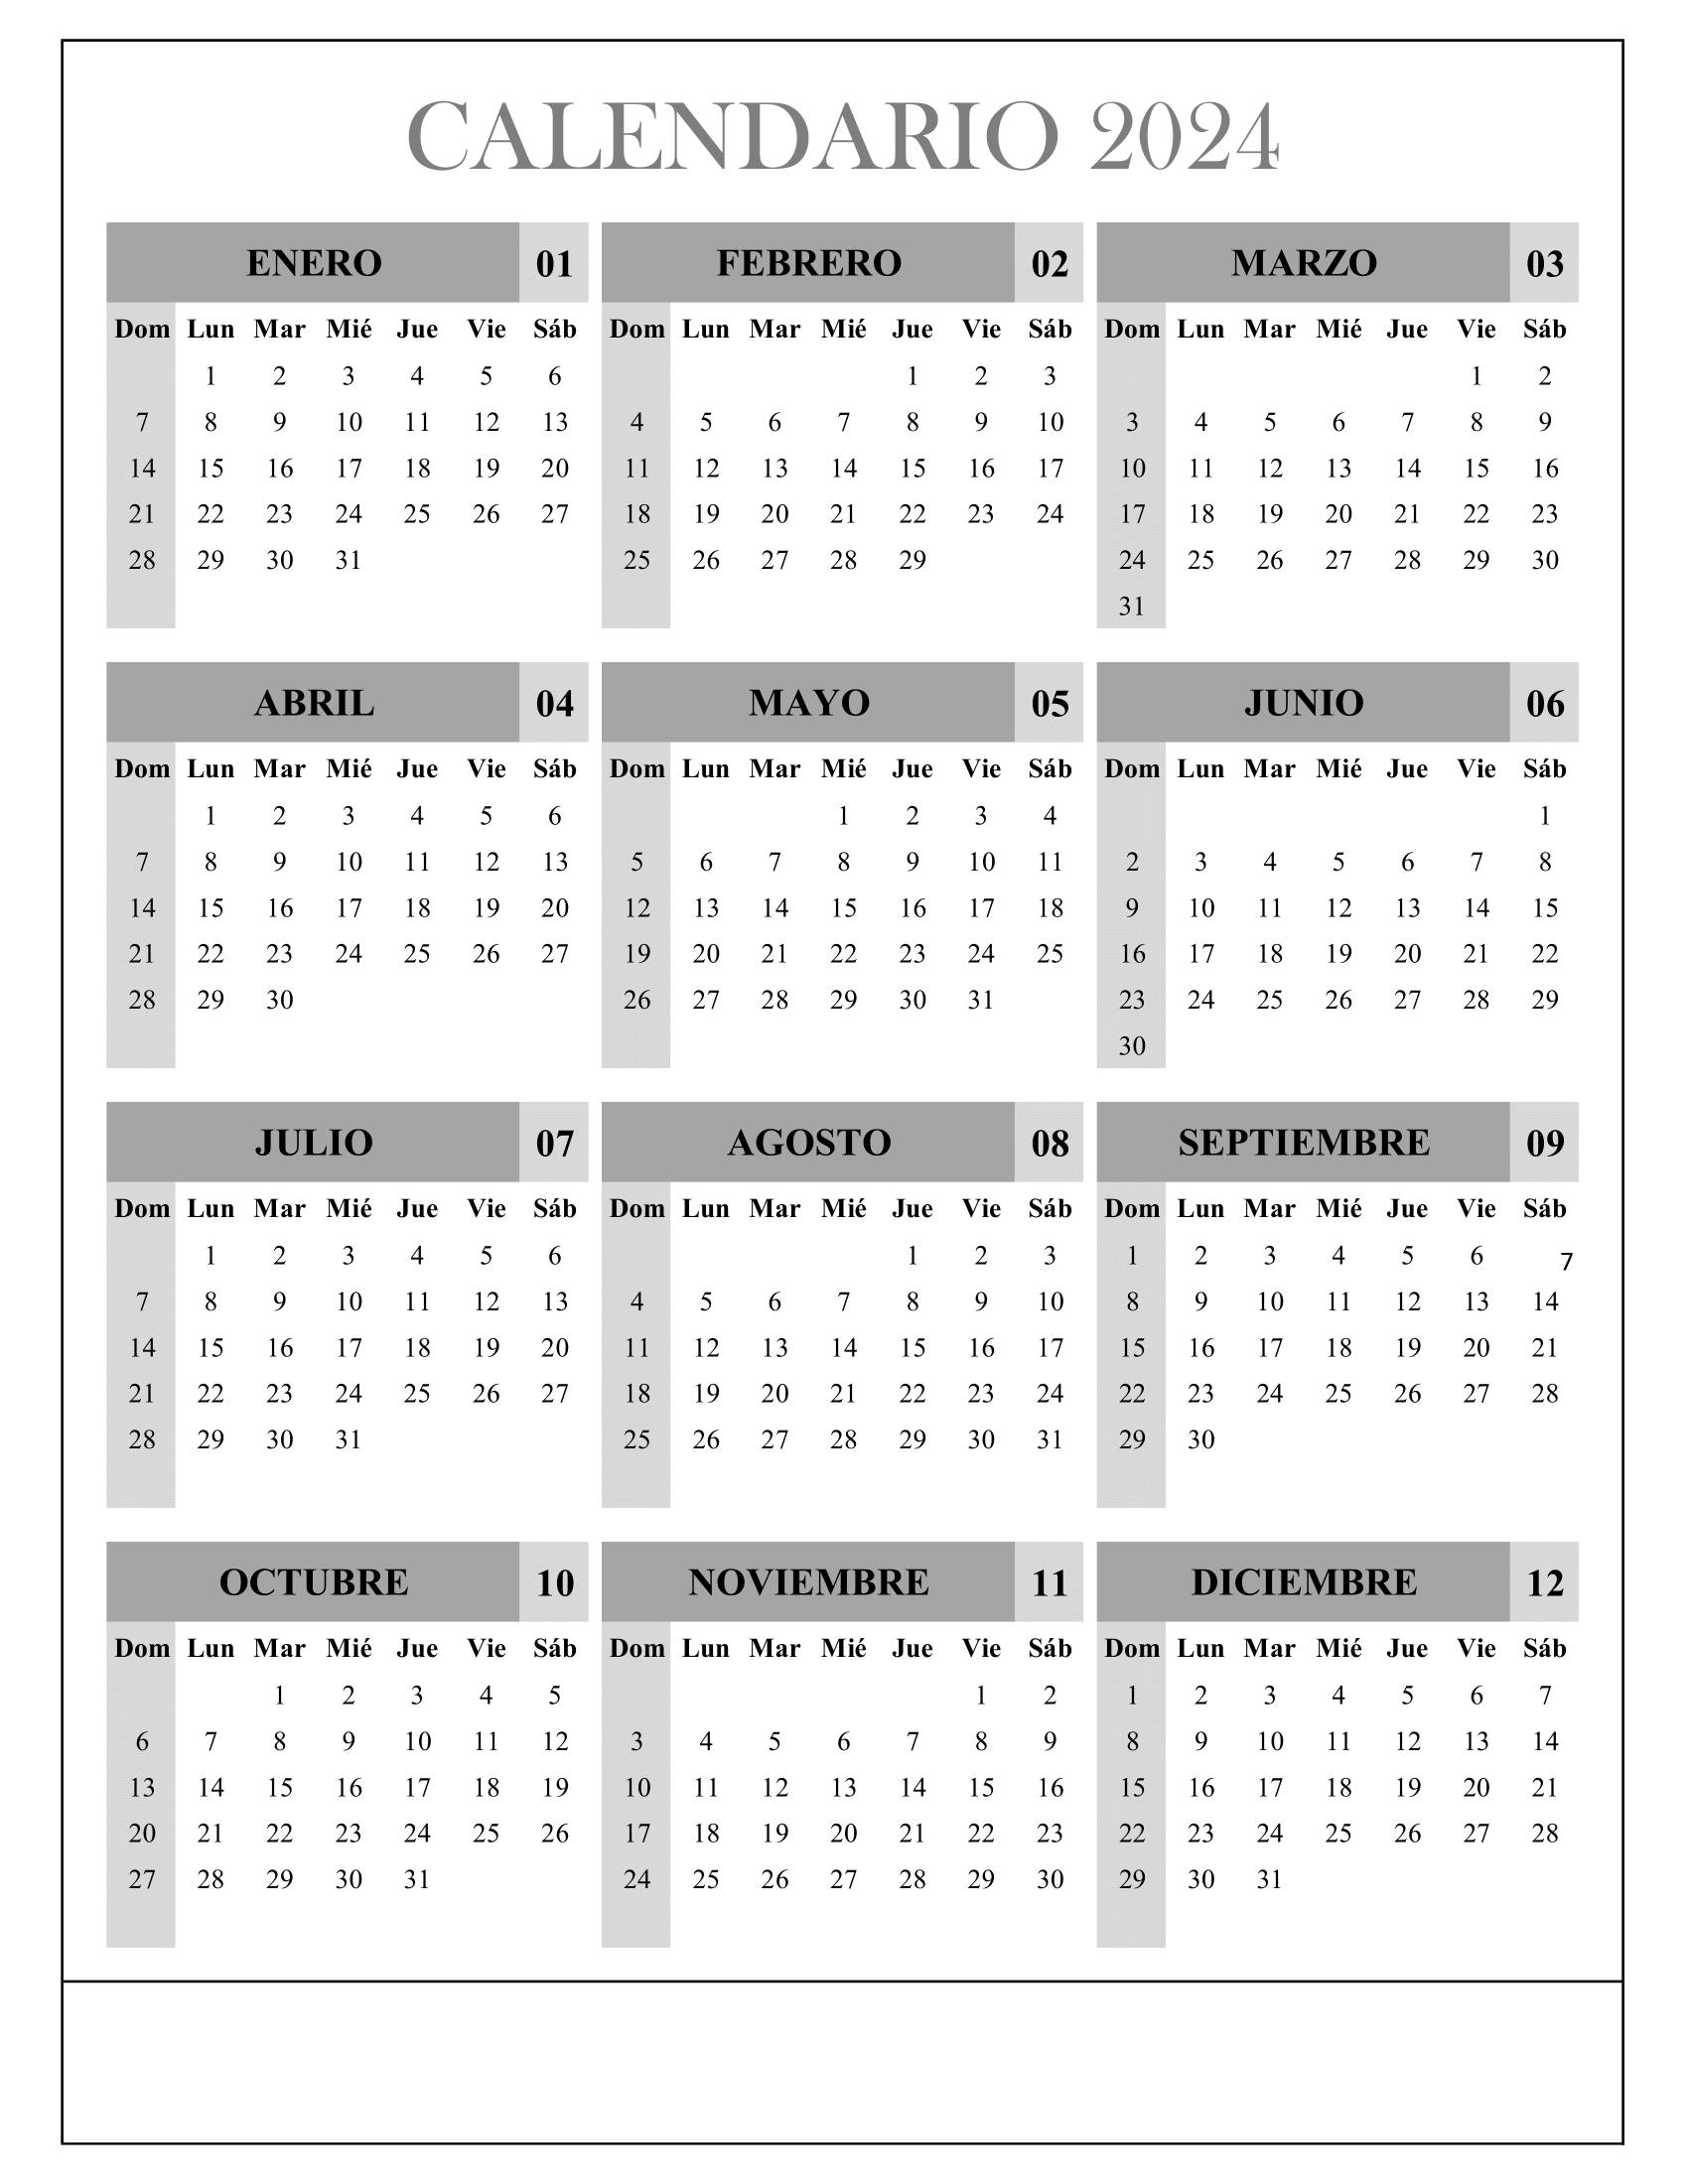 Calendario Febrero 2024, Obtenga aquí el Calendario Febrero 2024 Imprimible